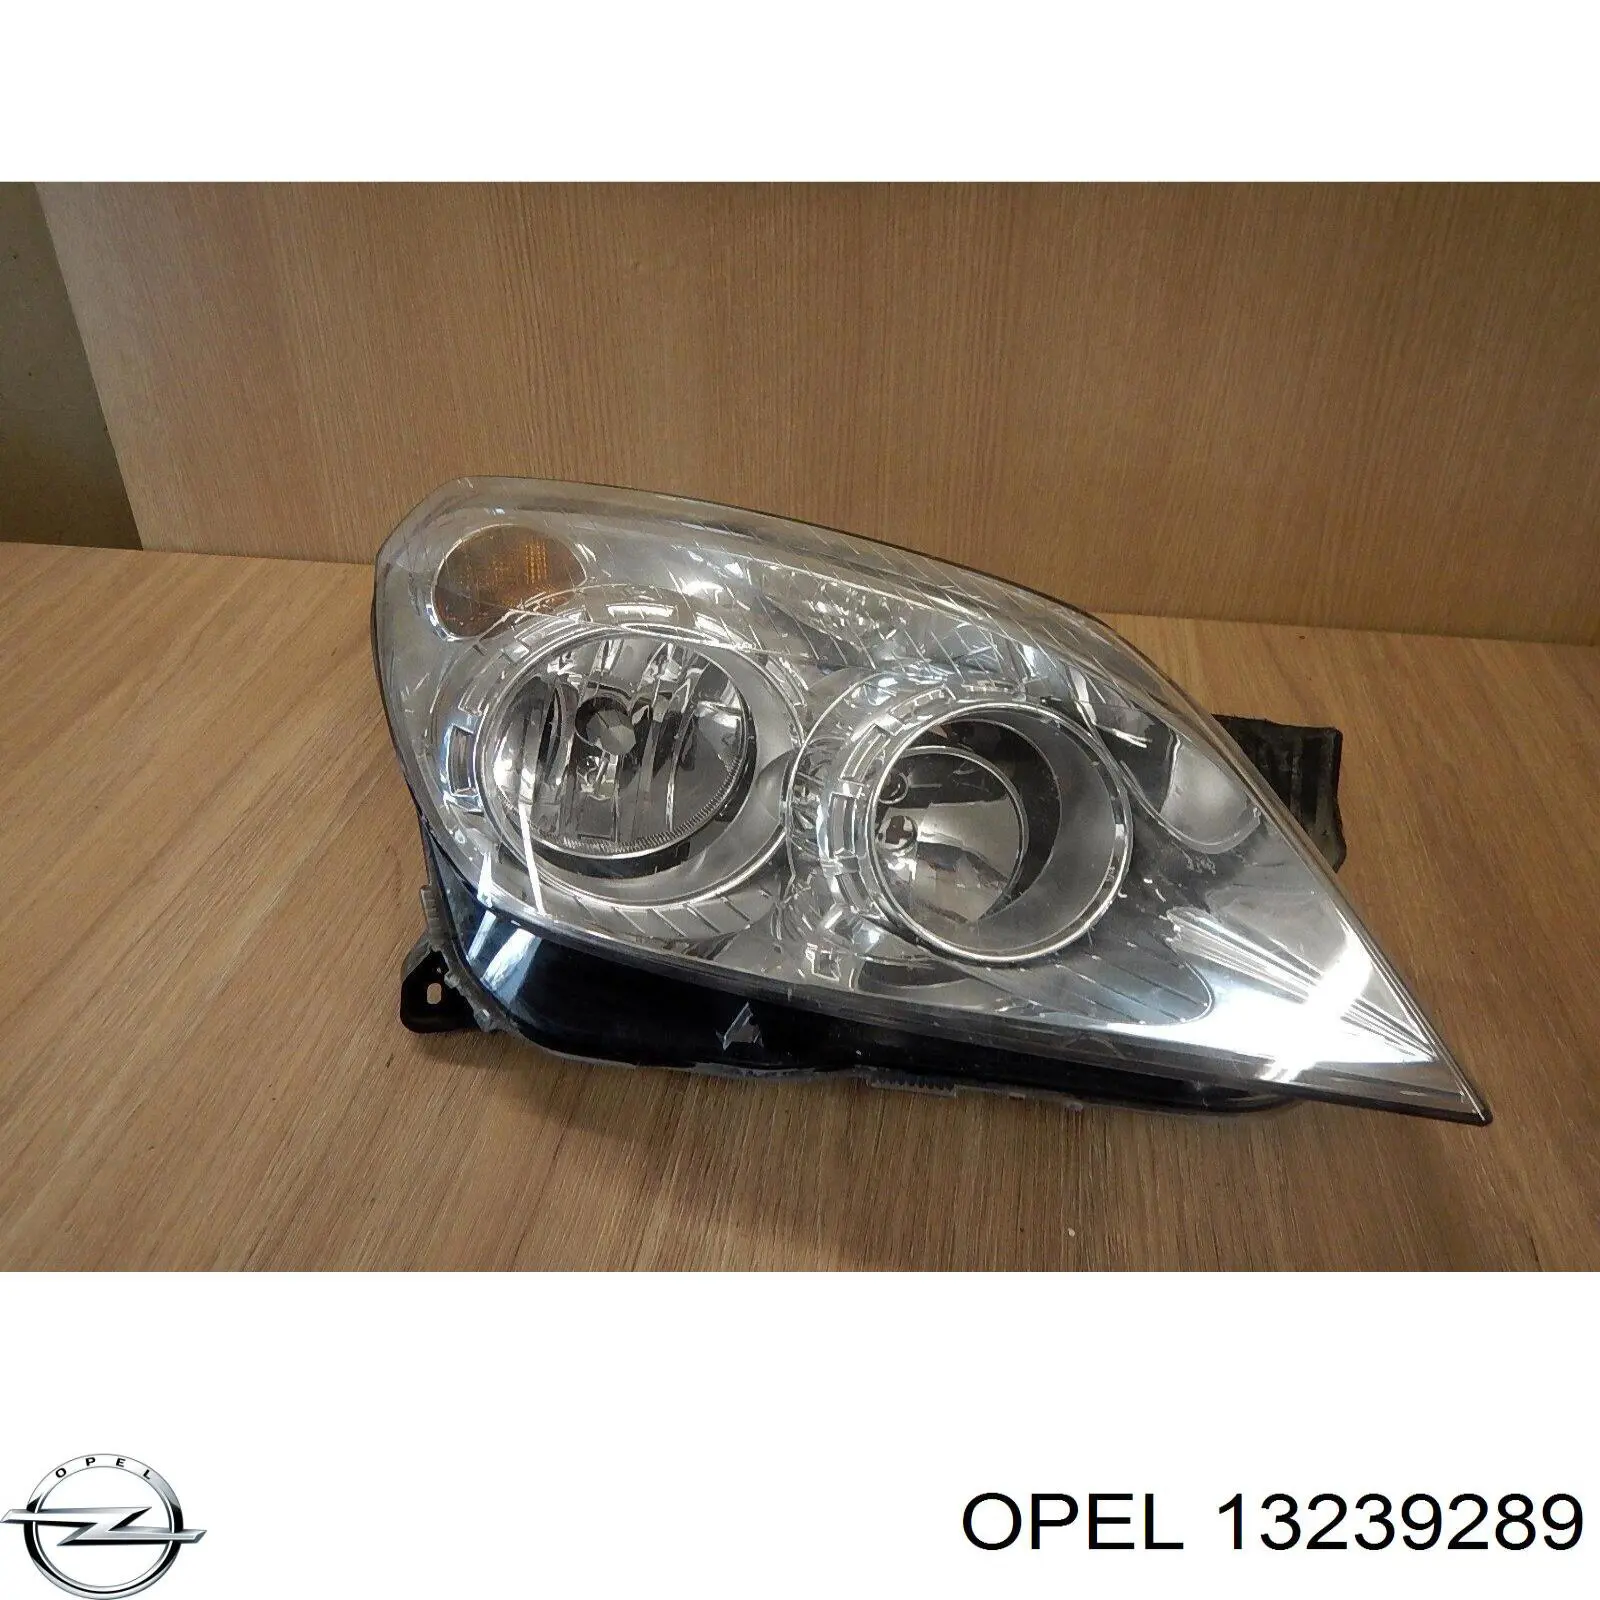 13239289 Opel faro derecho